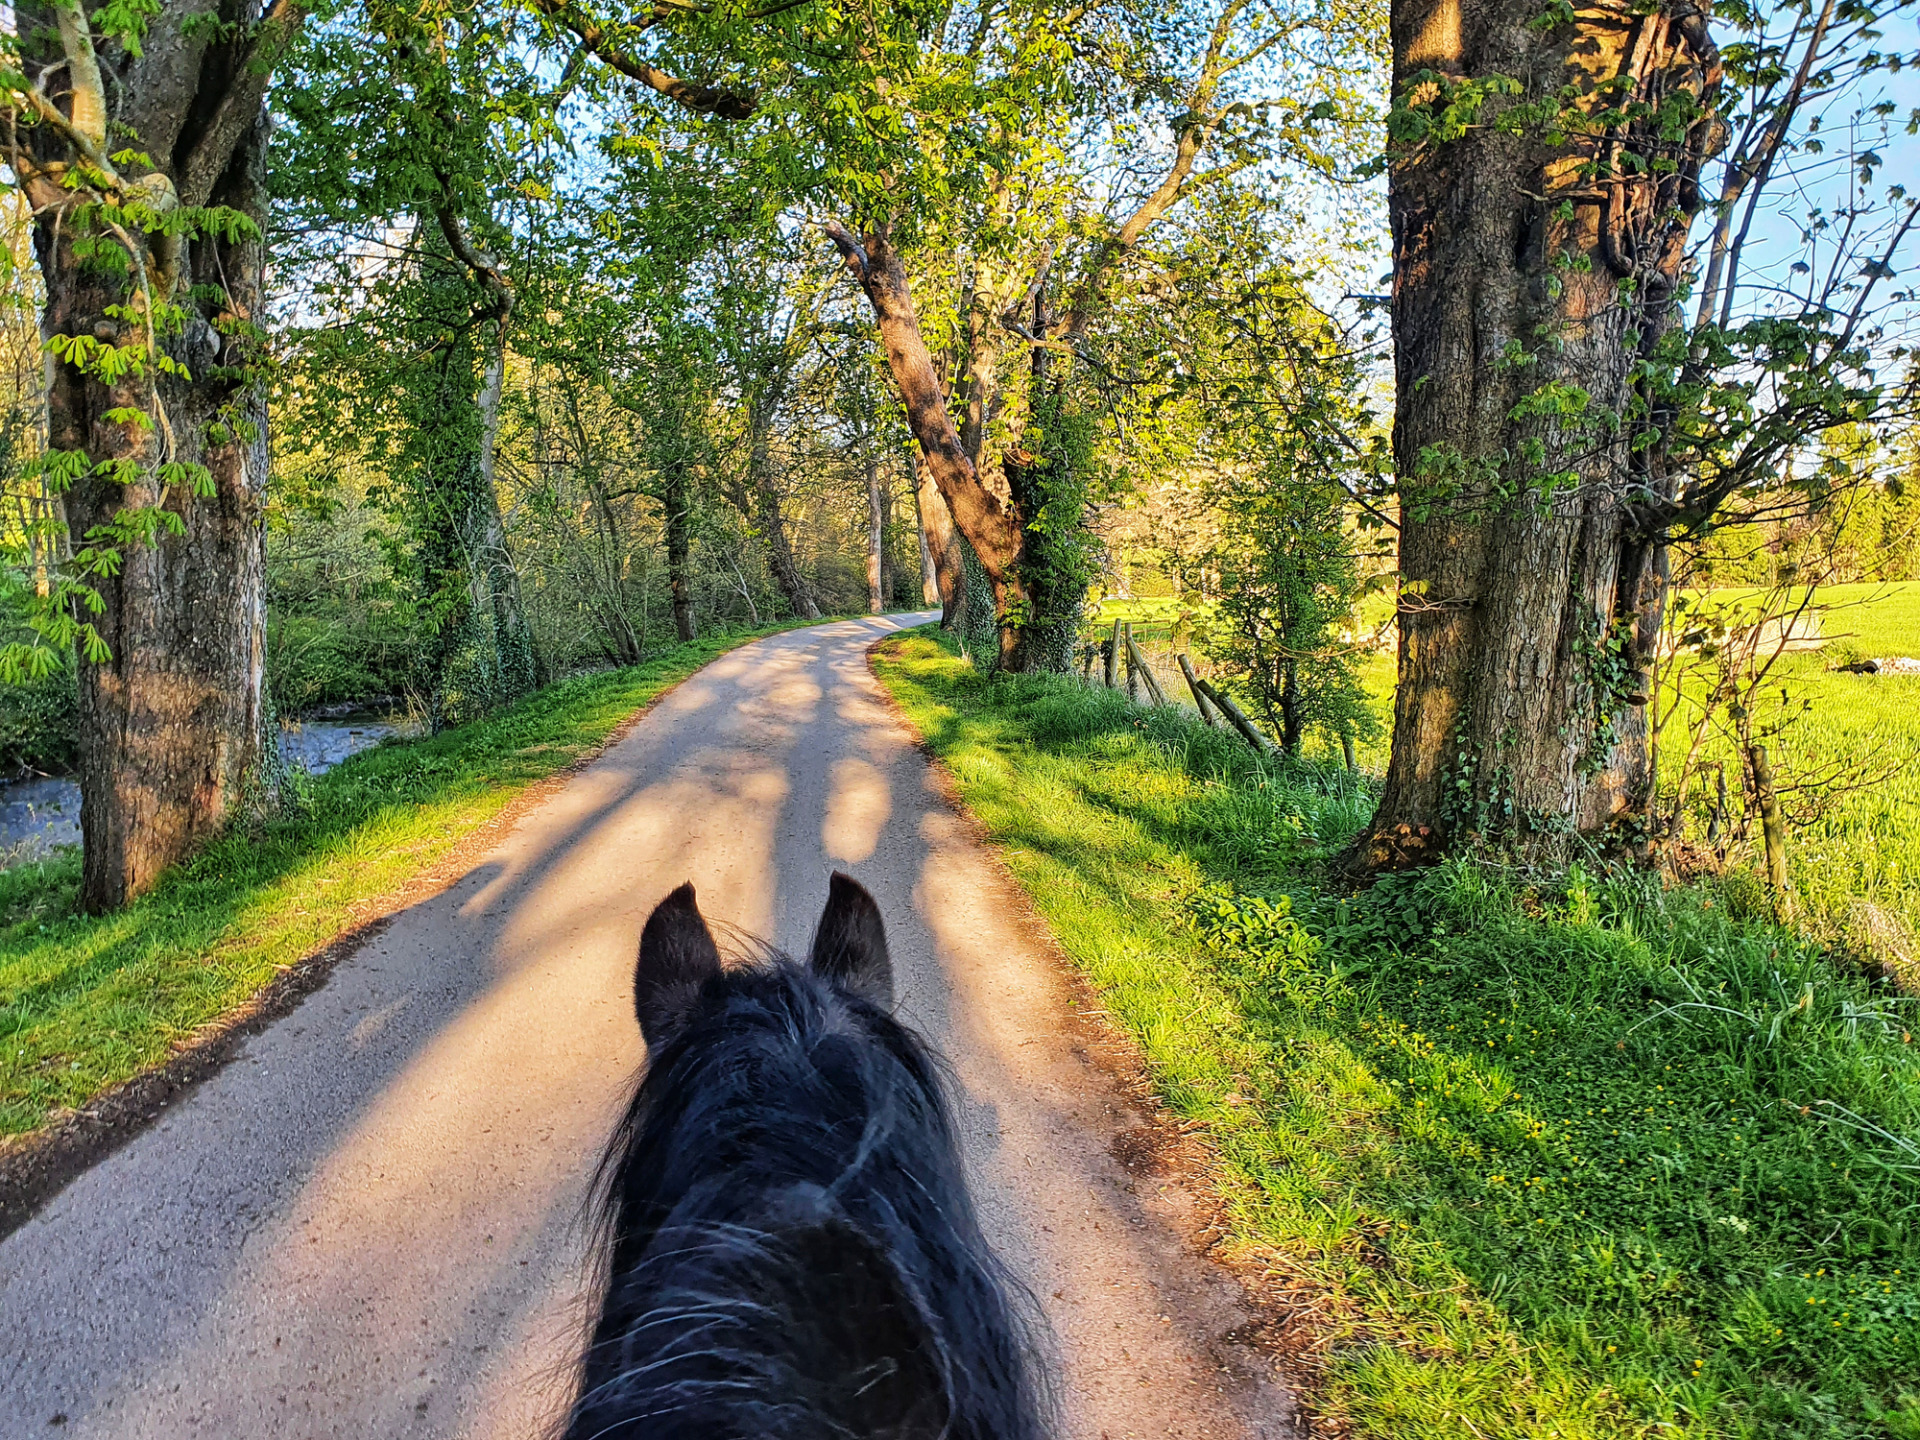 Equitazione in sicurezza: passeggiata a cavallo